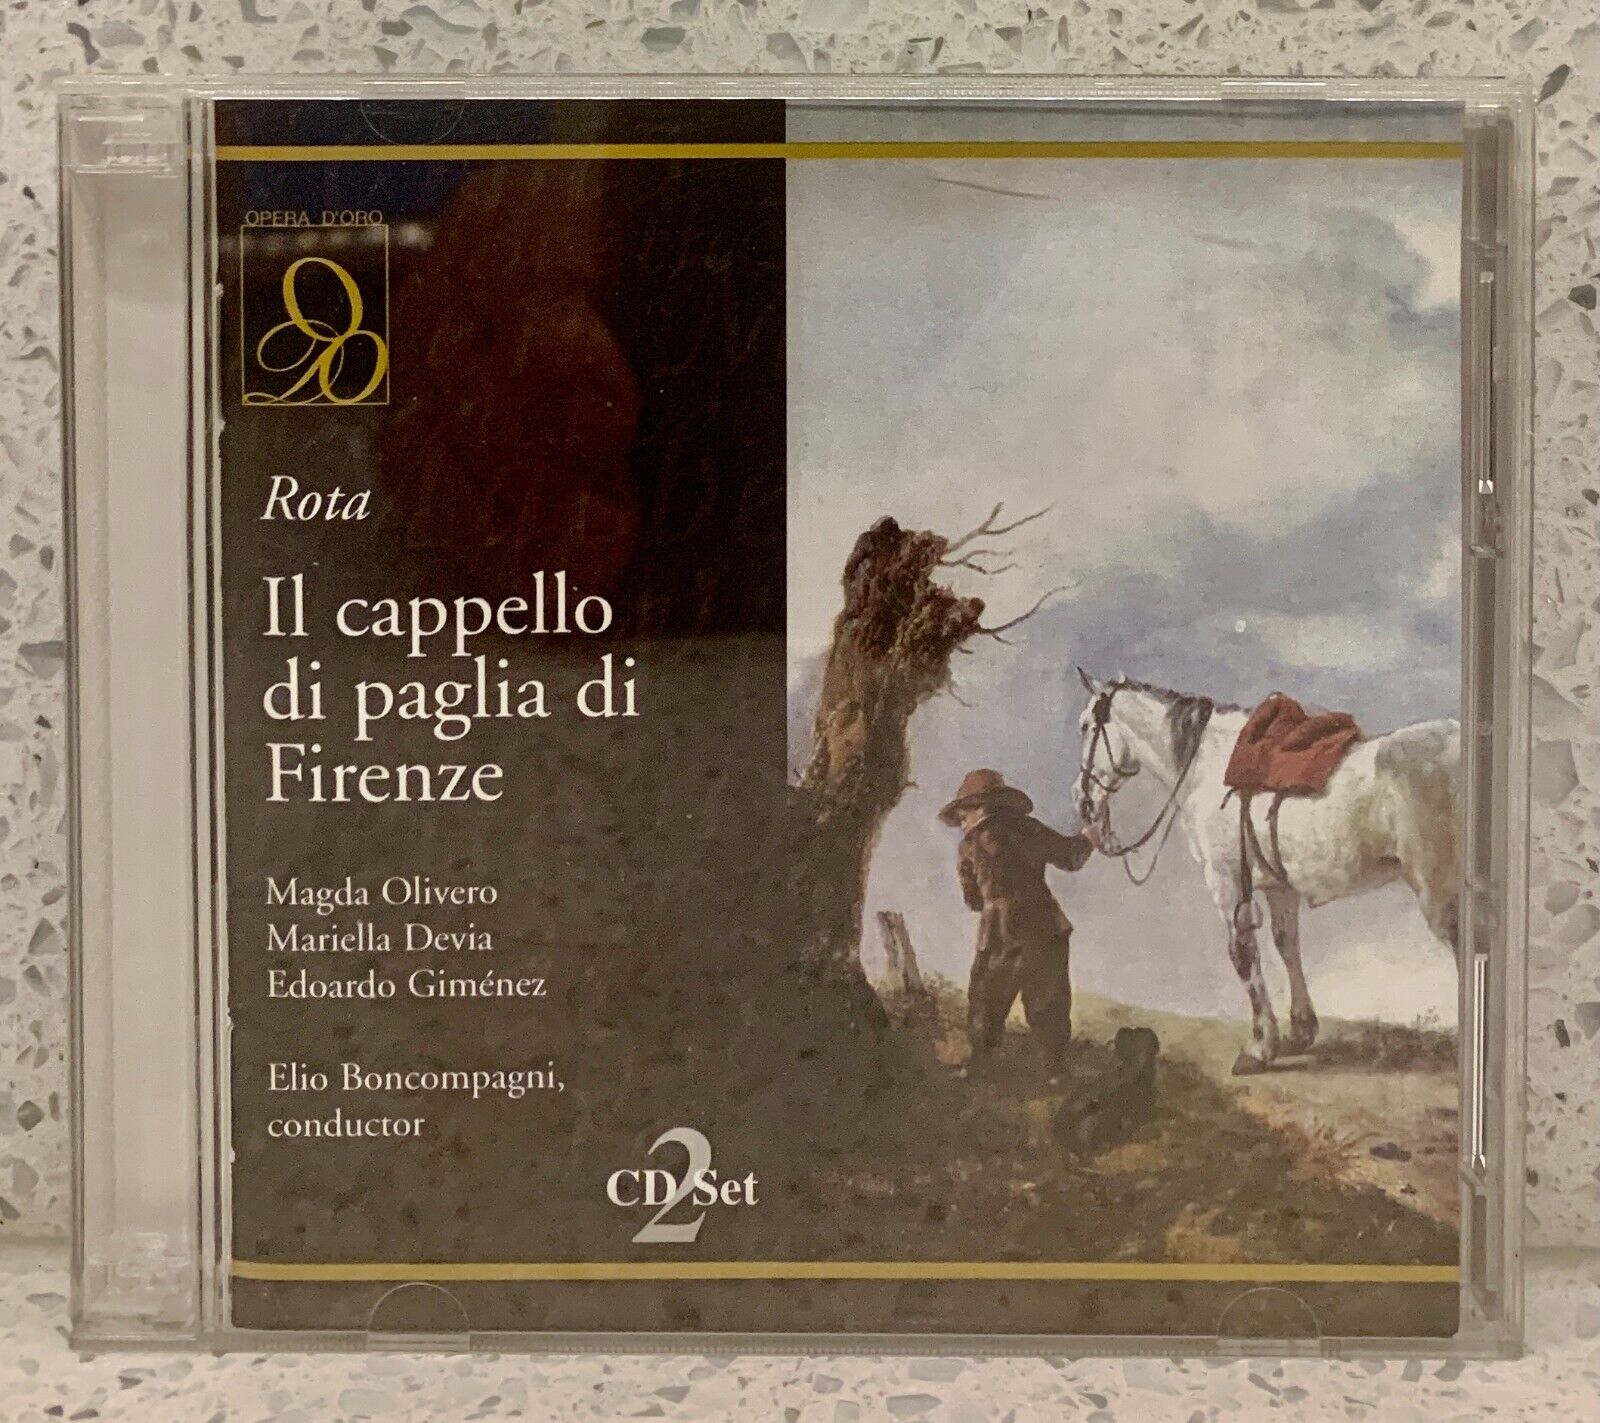 ROTA Il cappello di paglia di Firenze [1976] (2 discs Opera d\'Oro) MAGDA OLIVERO